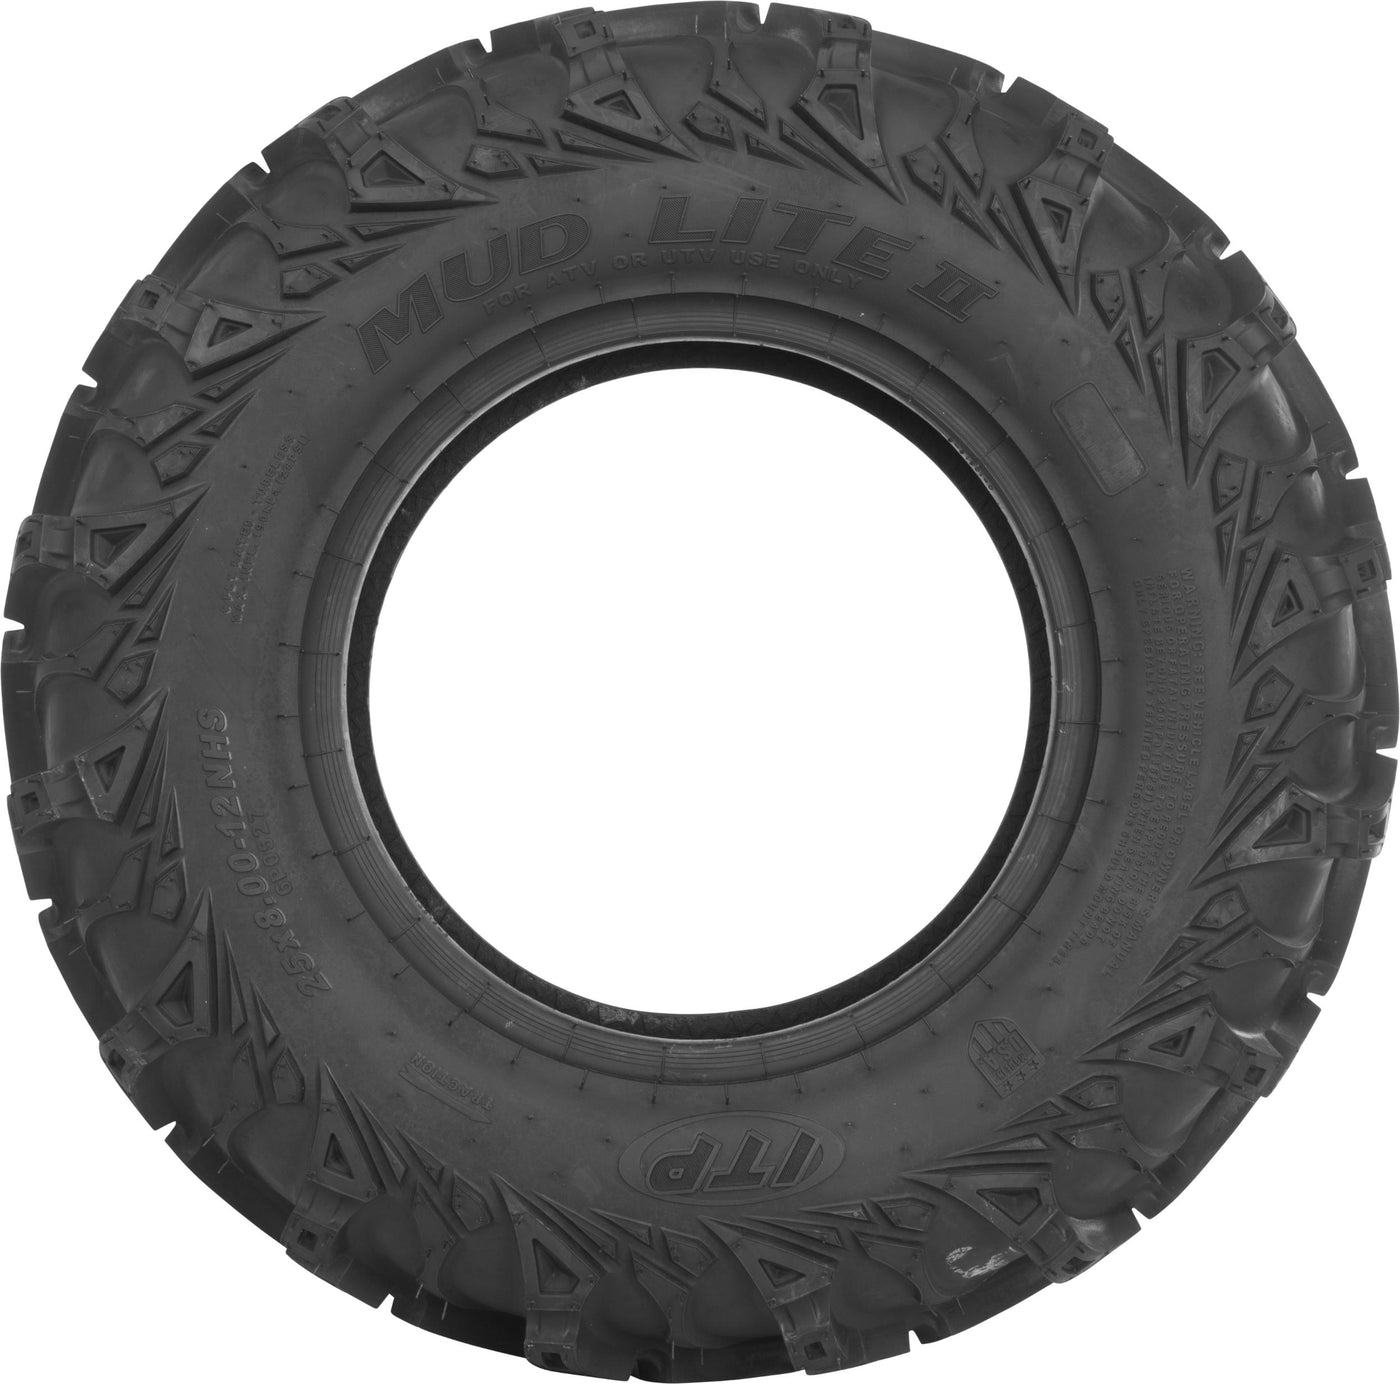 Tire Mud Lite Ii Front 30x9-14 Lr-1360lbs Bias